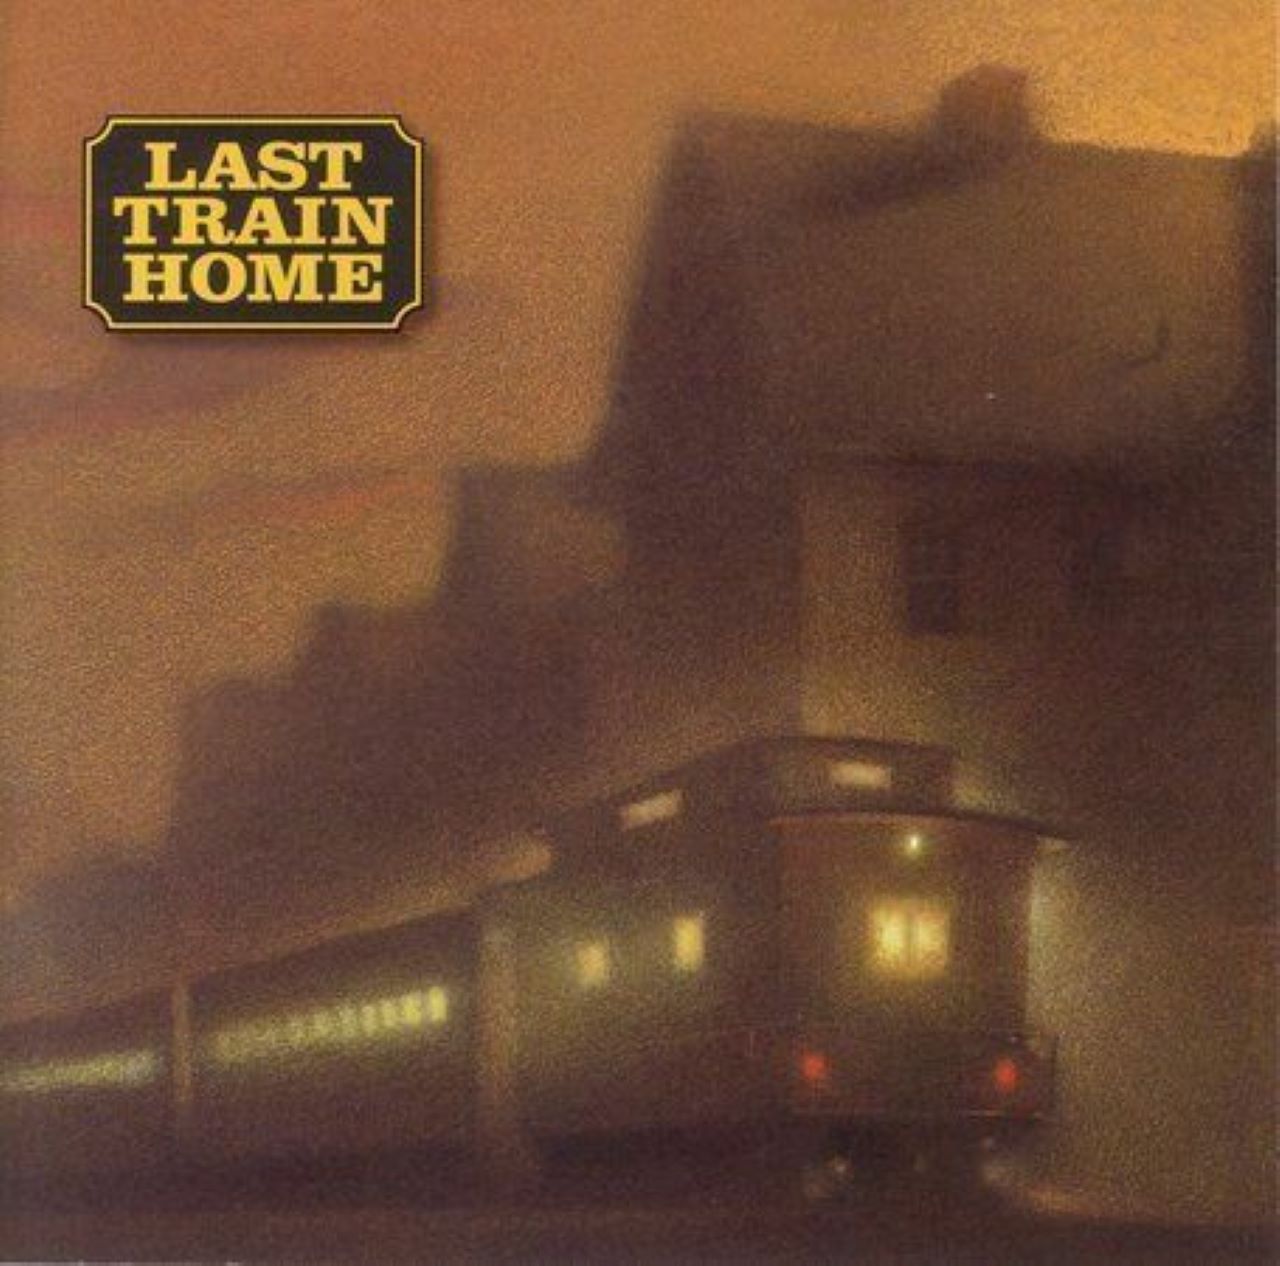 Last Train Home - Last Train Home cover album